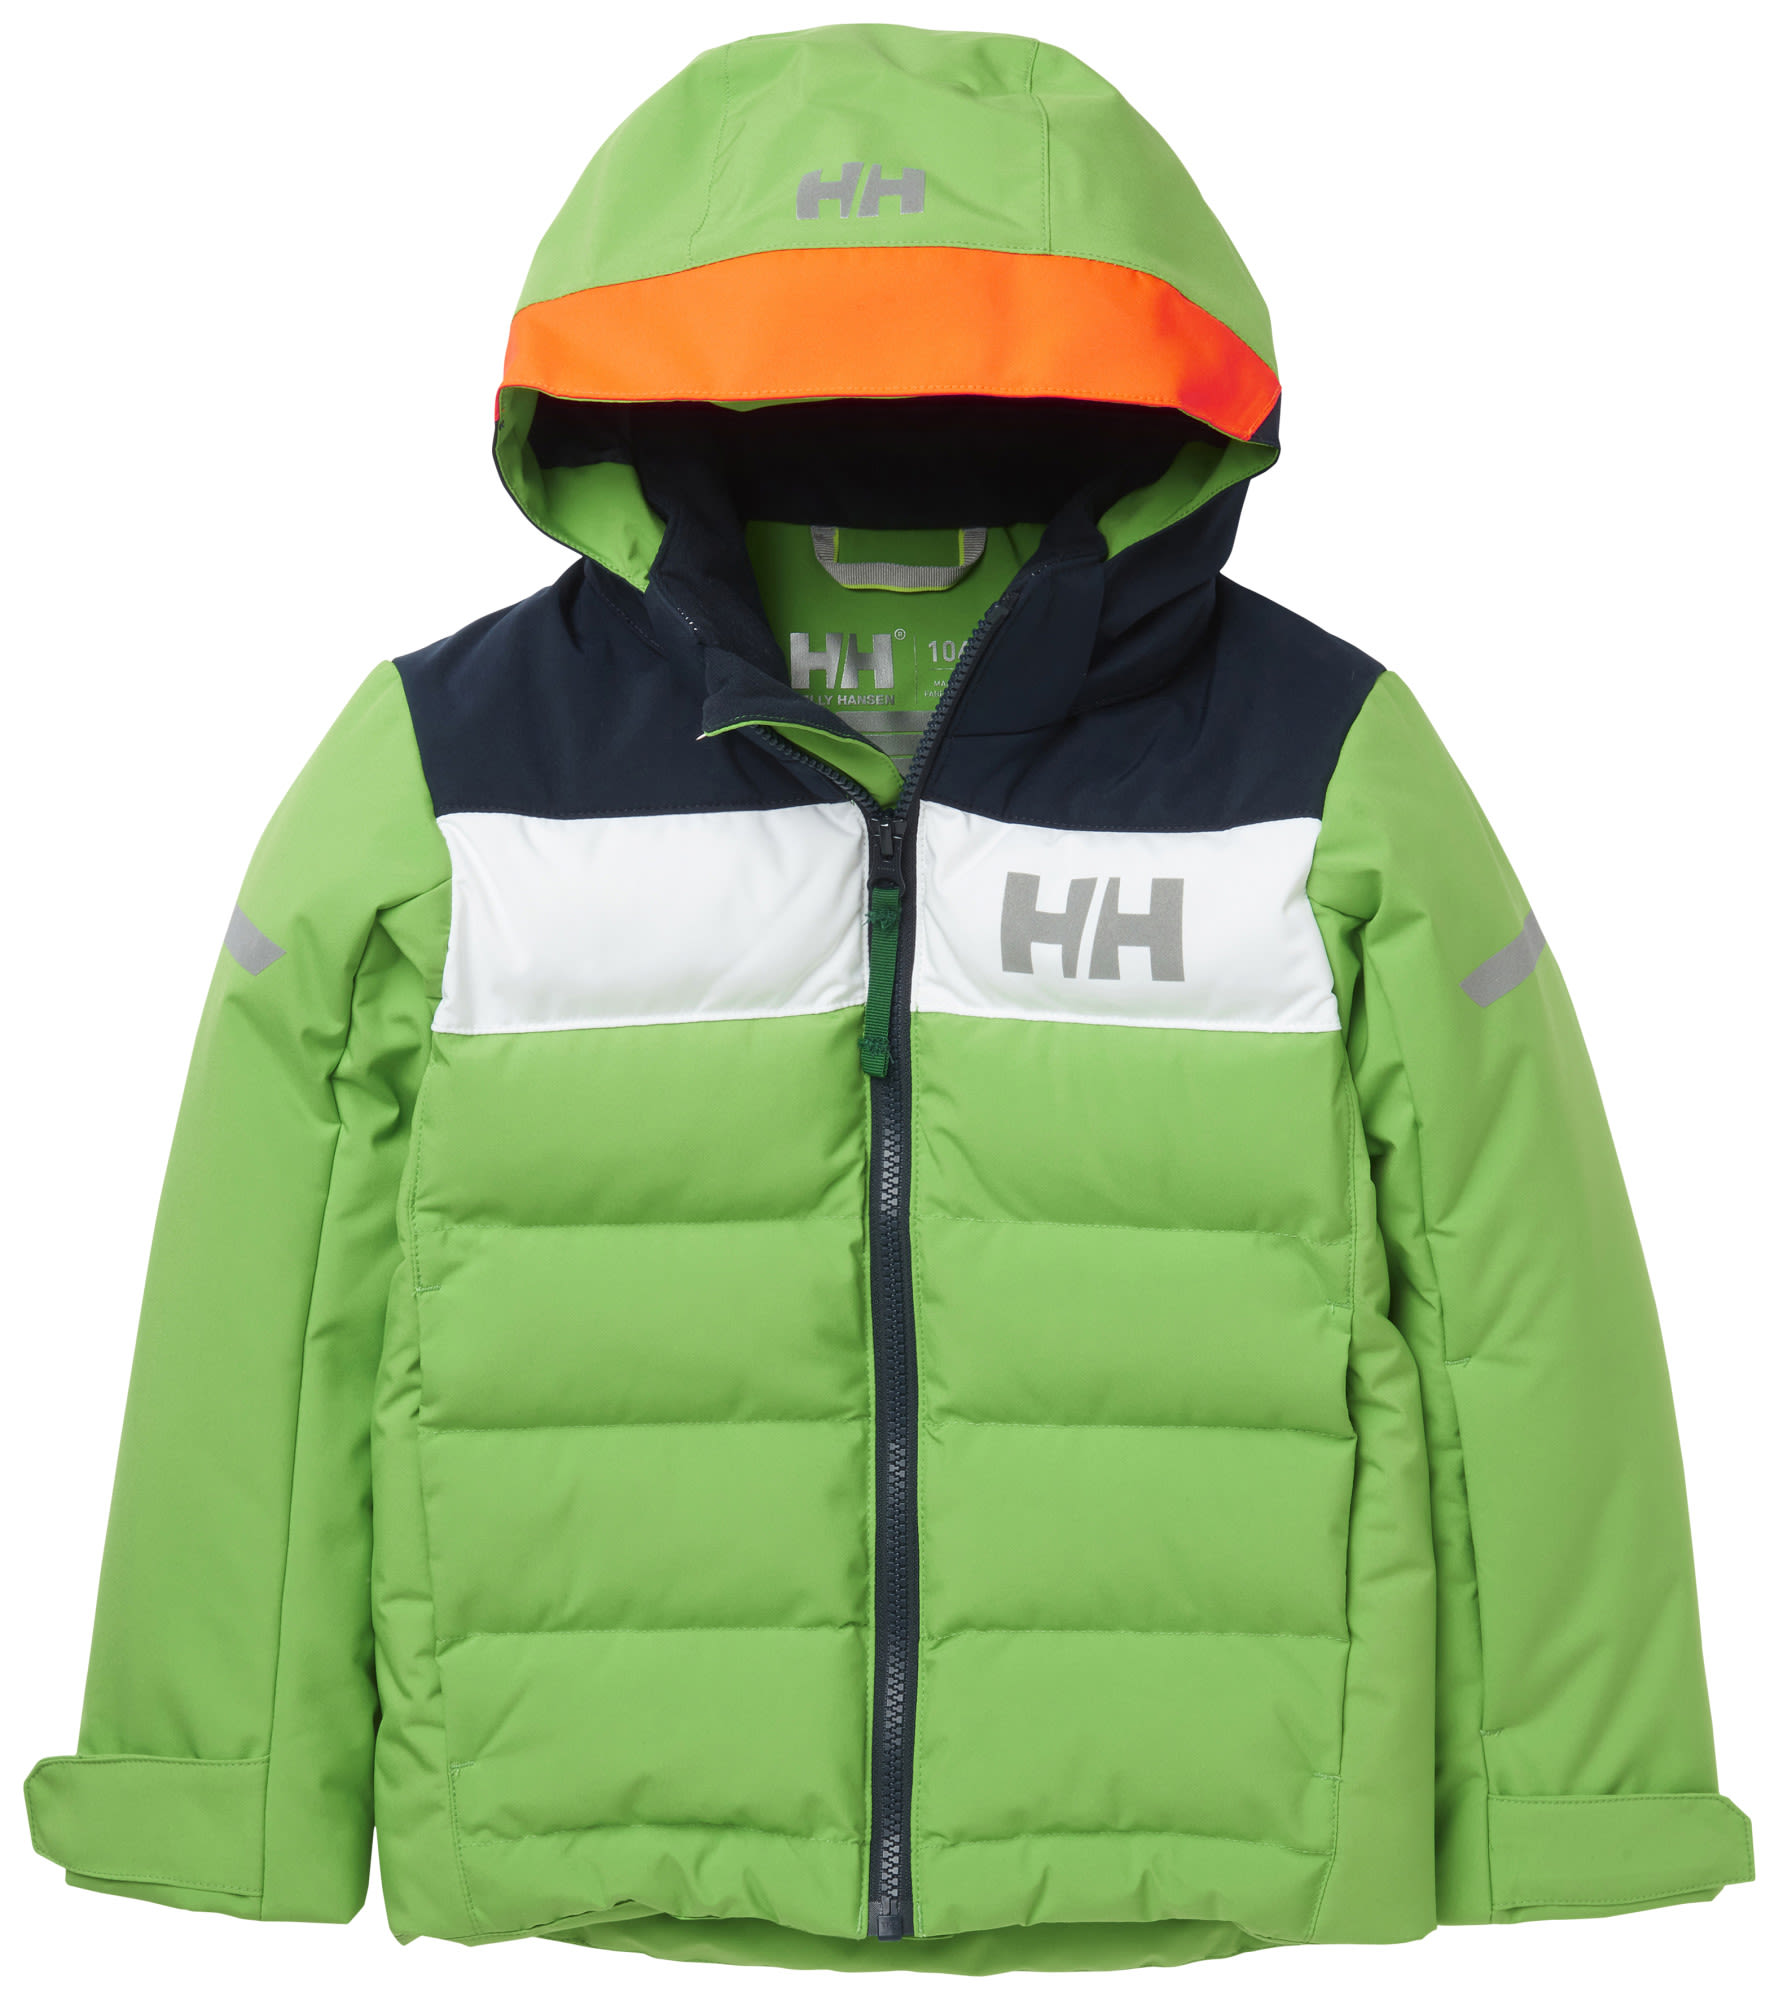 Helly Hansen Kids Vertical Insulated Jacket Grün | Größe 110 | Kinder Ski- & 